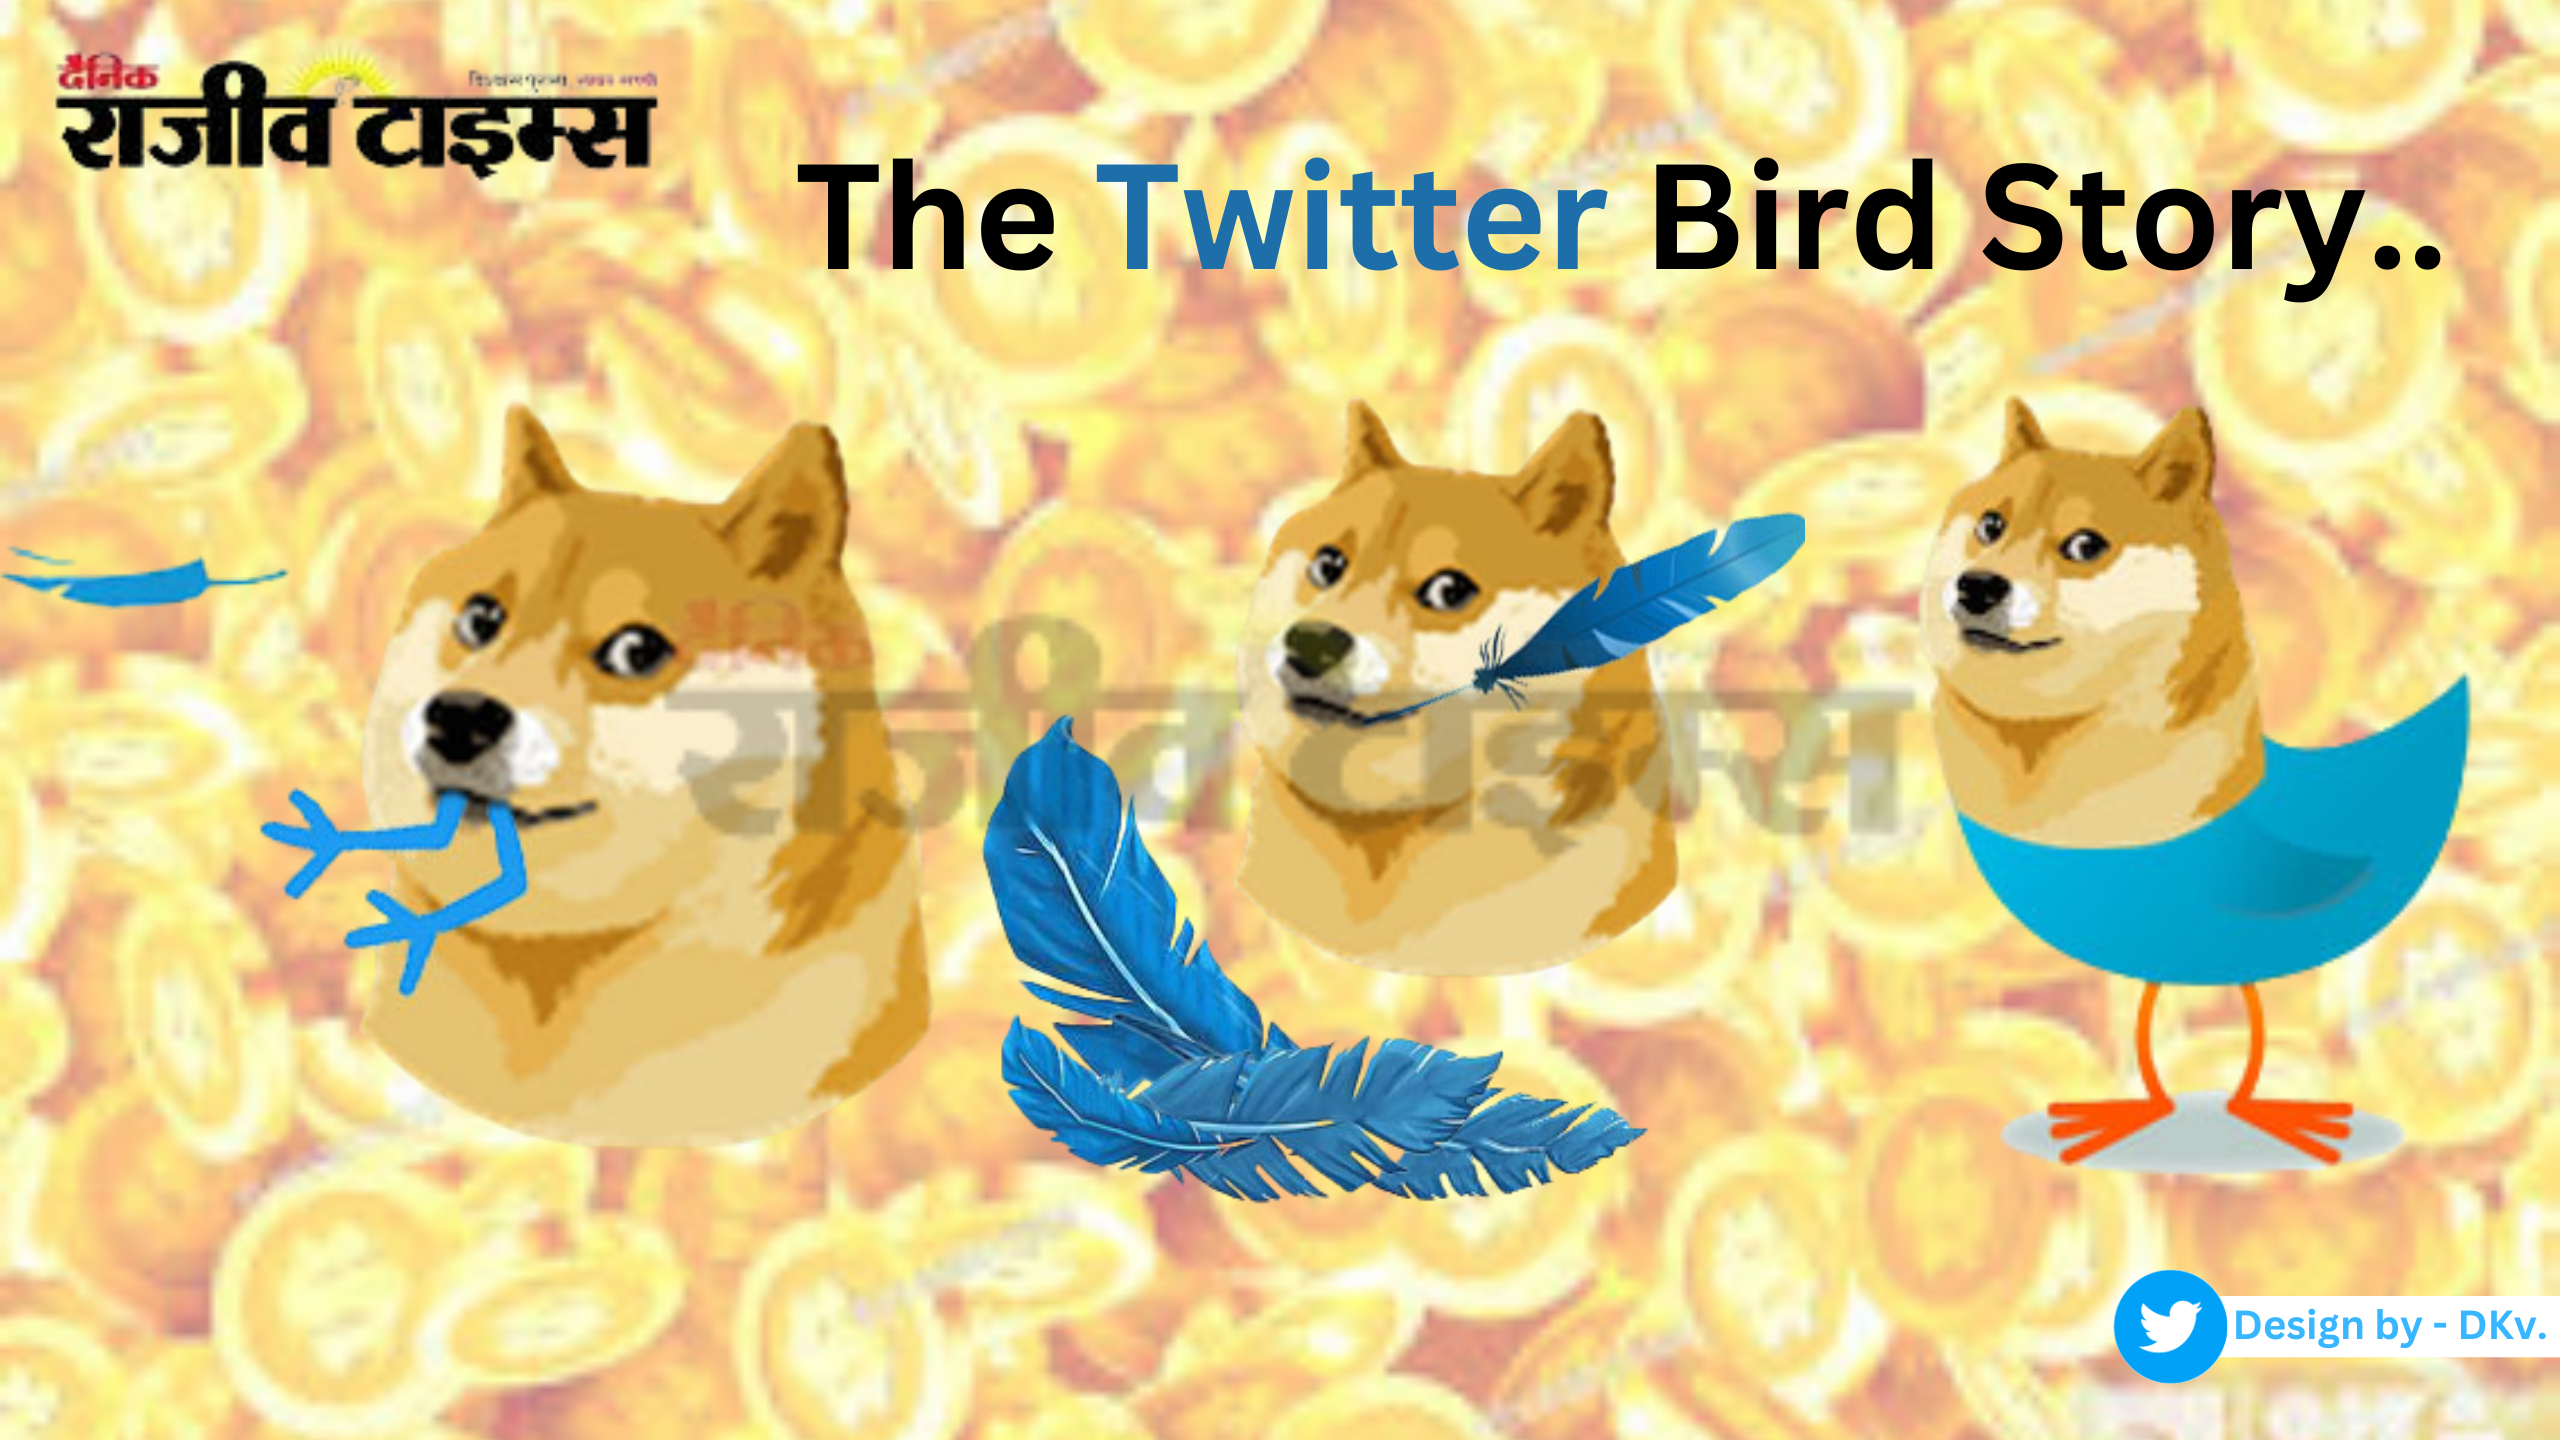 कहा गयी Twitter की चिड़िया, आखिर मस्क ने क्यों बदला कंपनी का Logo? जानिए ट्विटर के Logo की जगह Doge के आने की पूरी कहानी